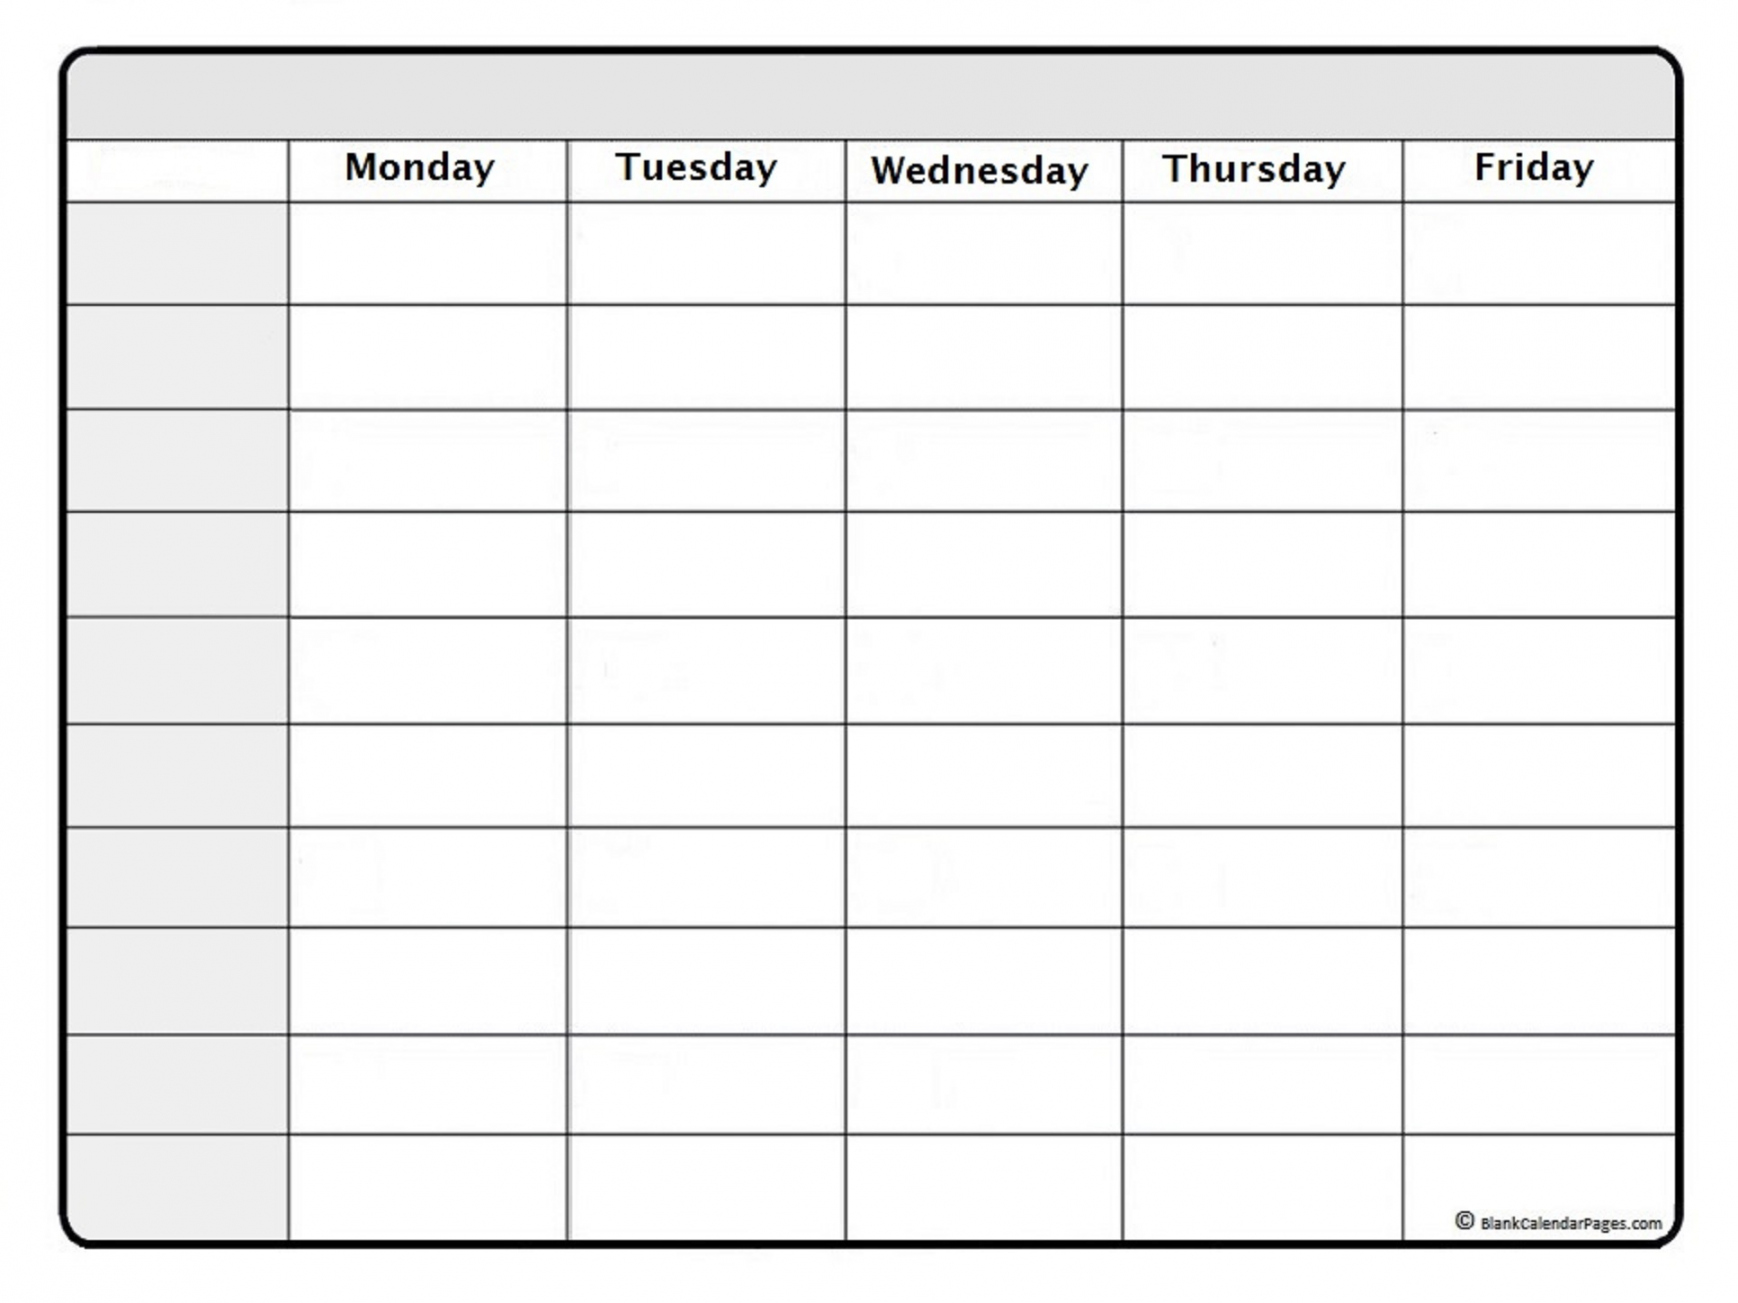 Free Weekly Calendar Printable - Printable - July  weekly calendar  July  weekly calendar template